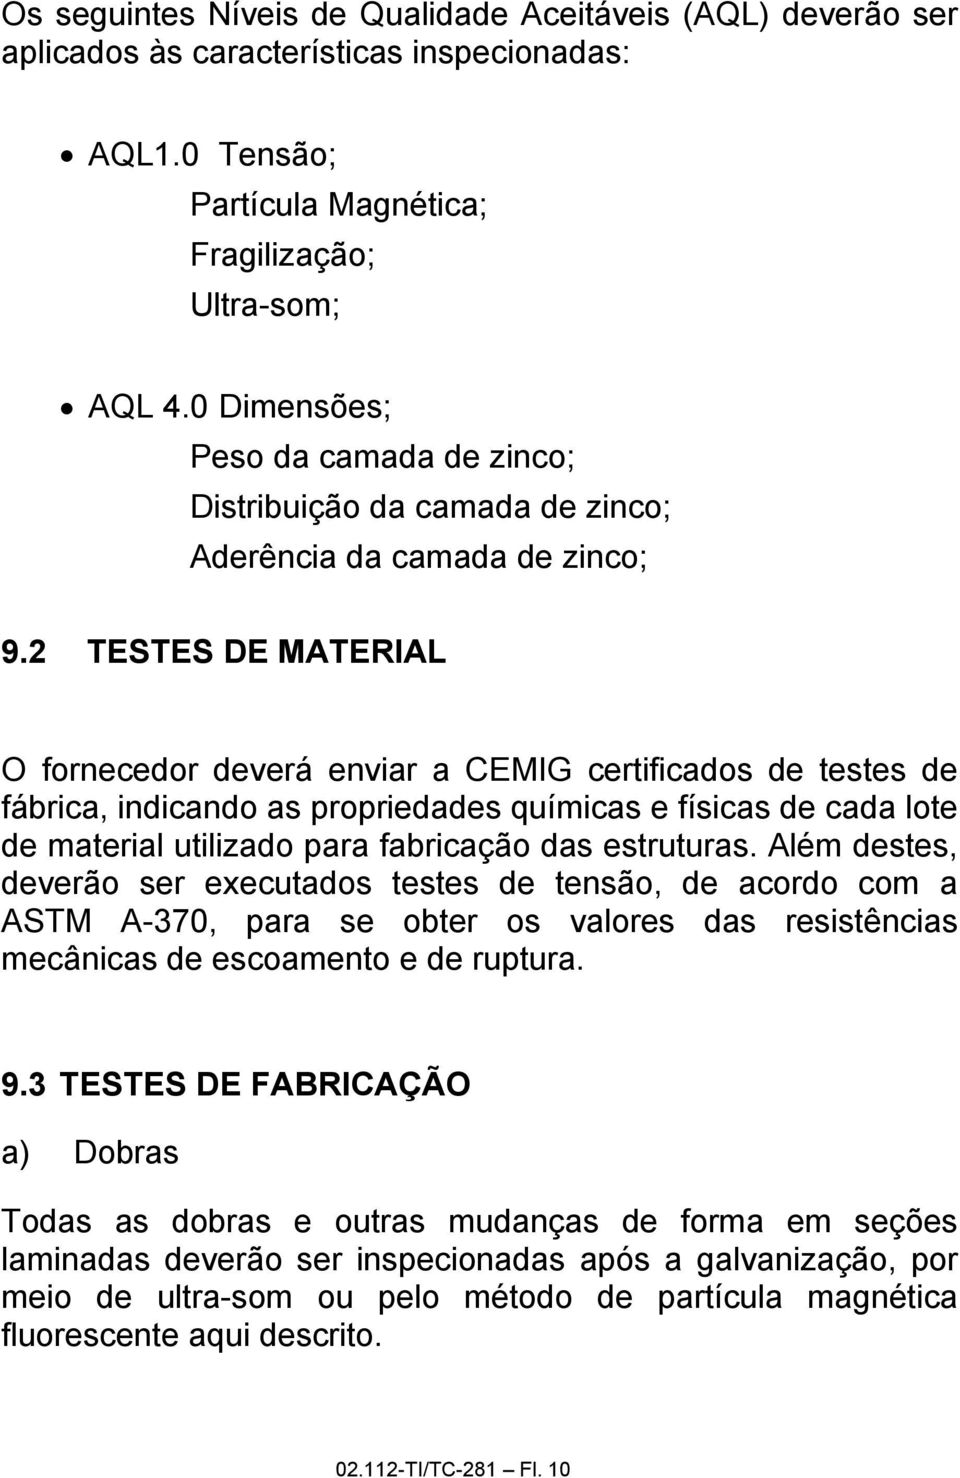 2 TESTES DE MATERIAL O fornecedor deverá enviar a CEMIG certificados de testes de fábrica, indicando as propriedades químicas e físicas de cada lote de material utilizado para fabricação das